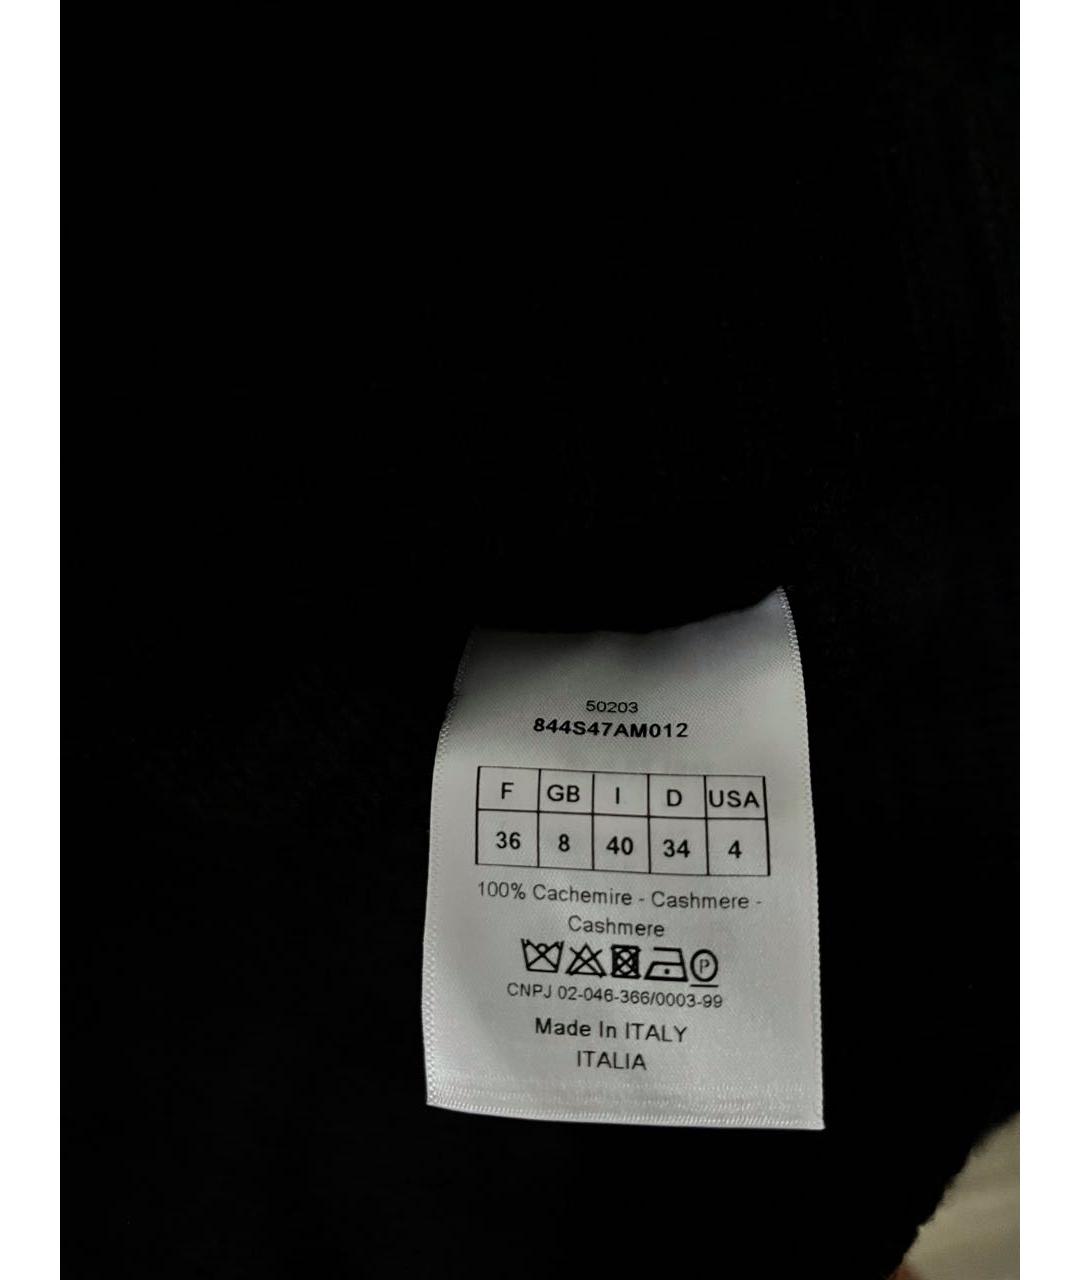 CHRISTIAN DIOR PRE-OWNED Черный кашемировый джемпер / свитер, фото 4